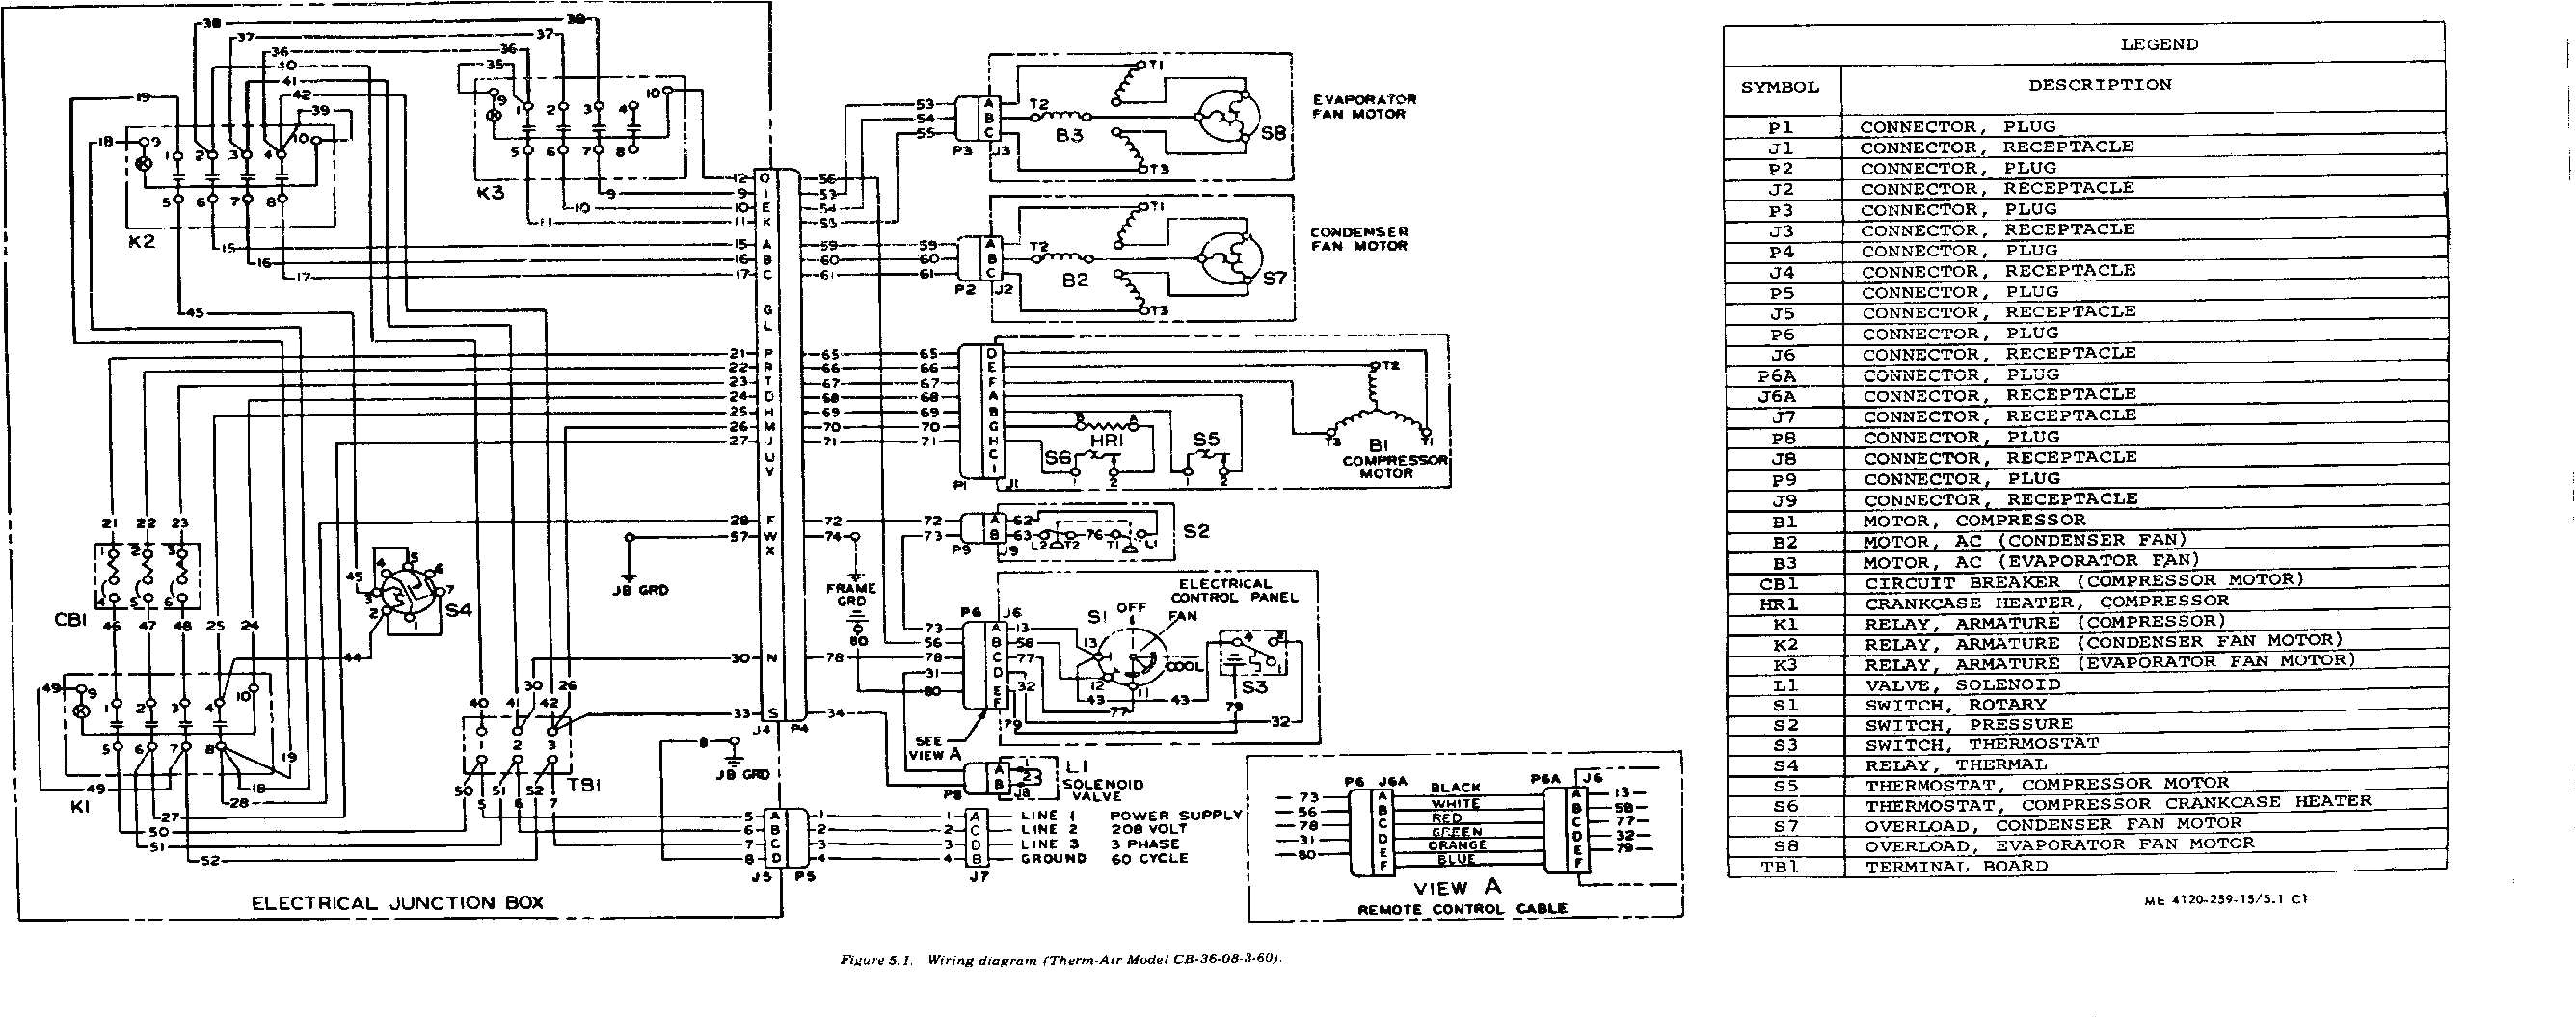 payne air conditioners wiring schematics wiring diagram blog payne air conditioners schematic